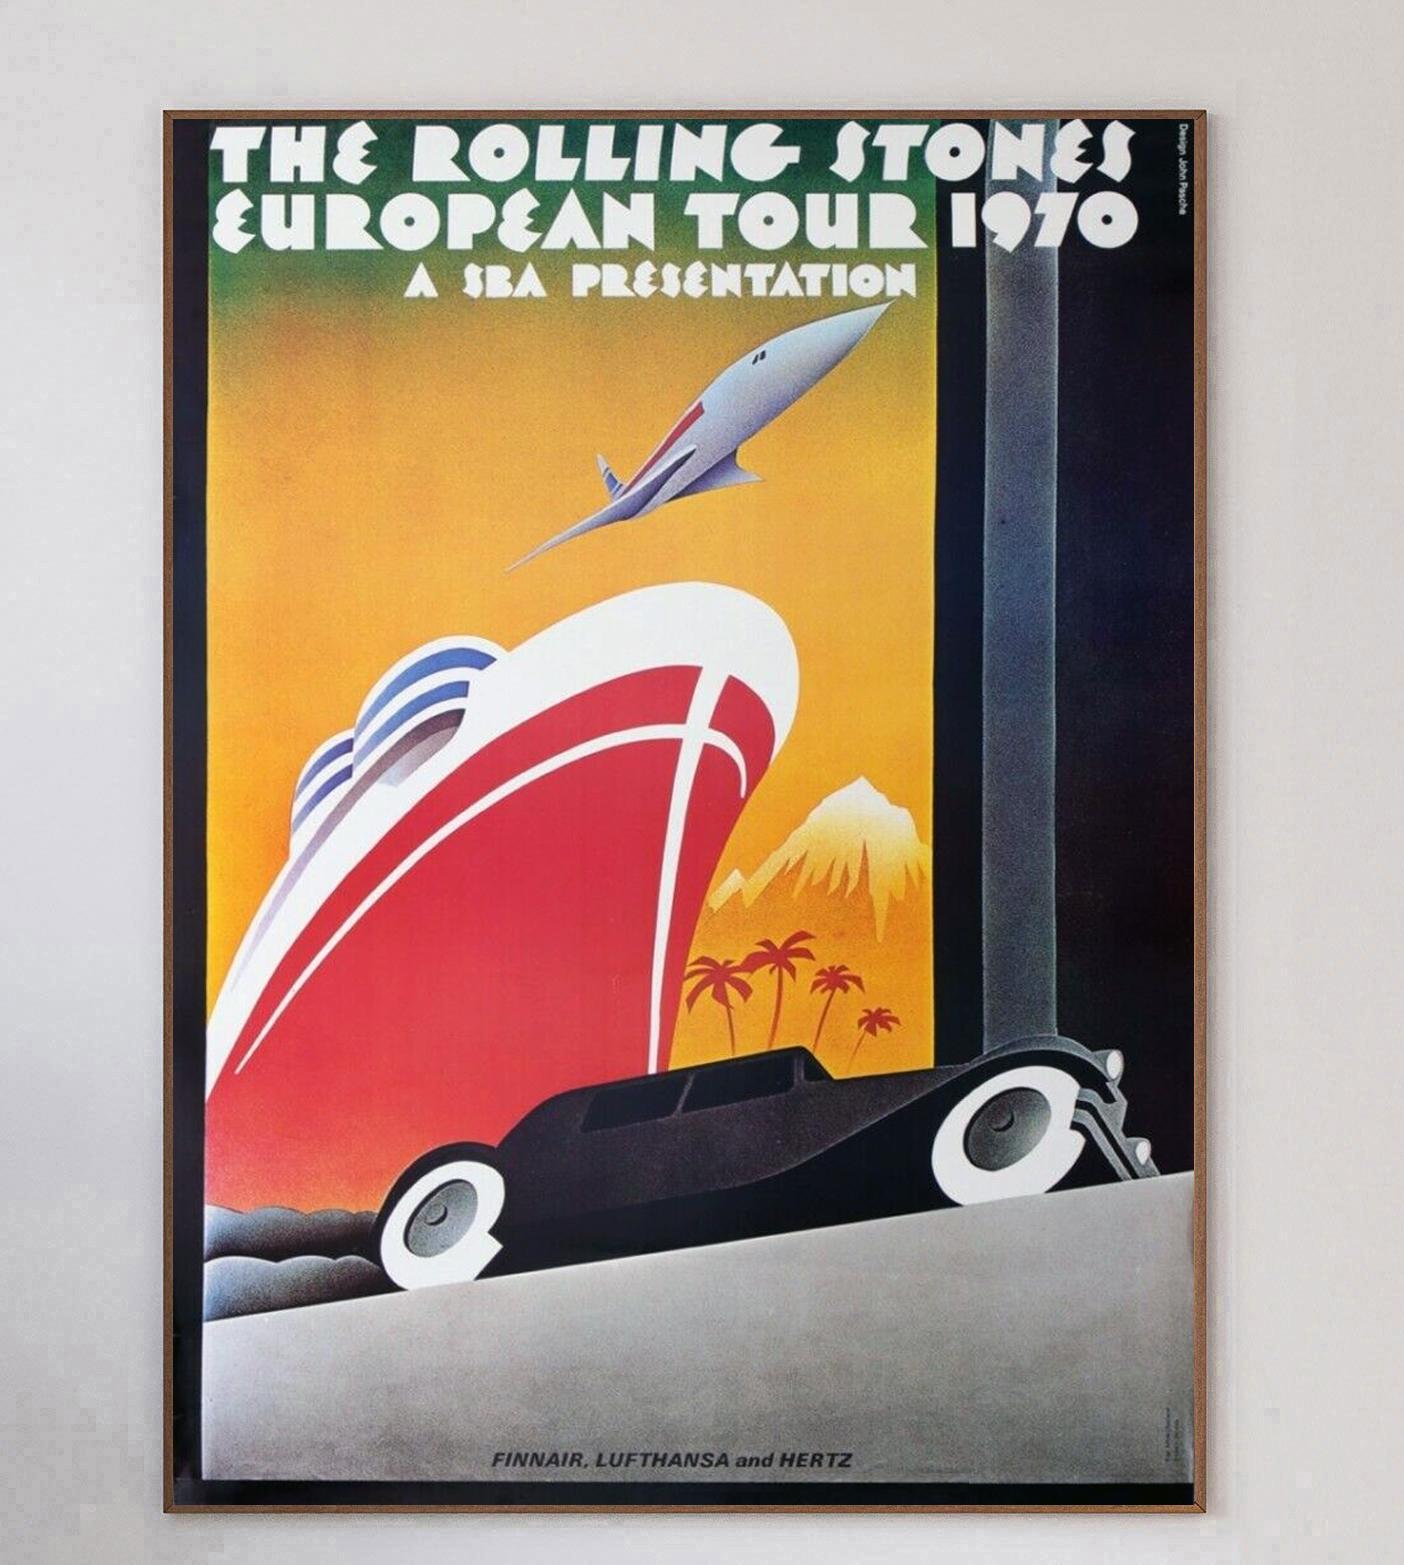 La tournée européenne 1970 des Rolling Stones s'est déroulée de la fin de l'été au début de l'automne 1970 et a permis au groupe de présenter son dernier album, 